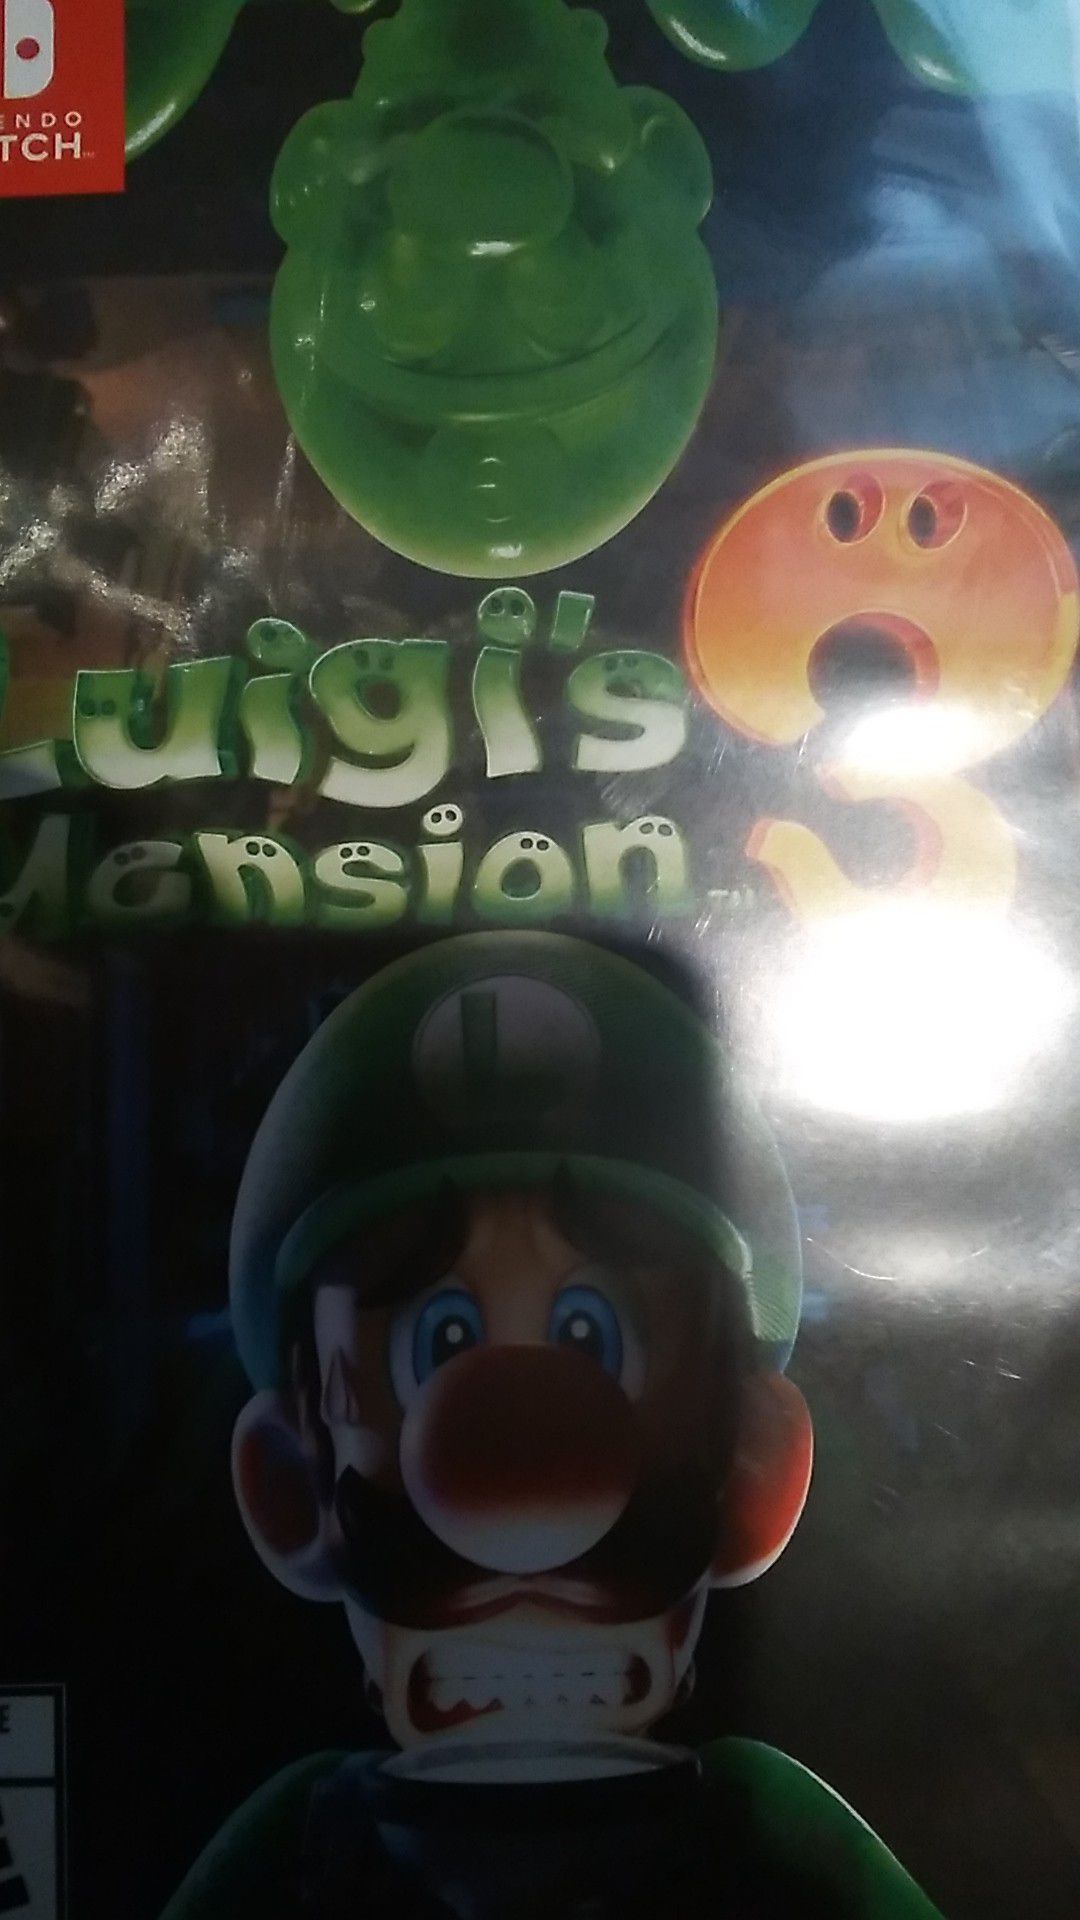 Luigis manison